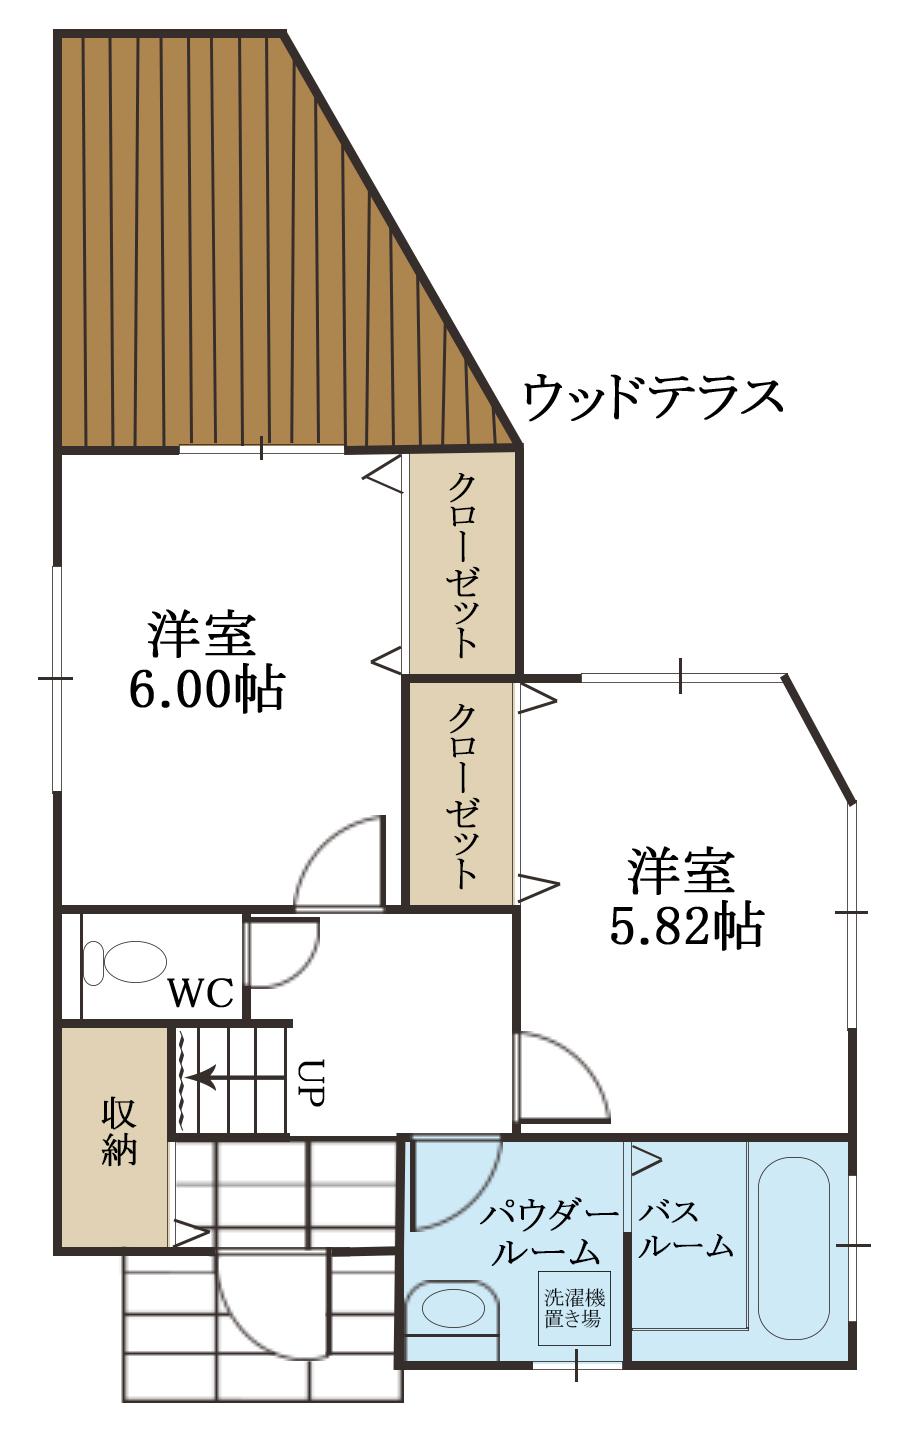 Floor plan. 29,800,000 yen, 3LDK, Land area 212.24 sq m , It is a building area of ​​83.62 sq m 1F Floor Plan.